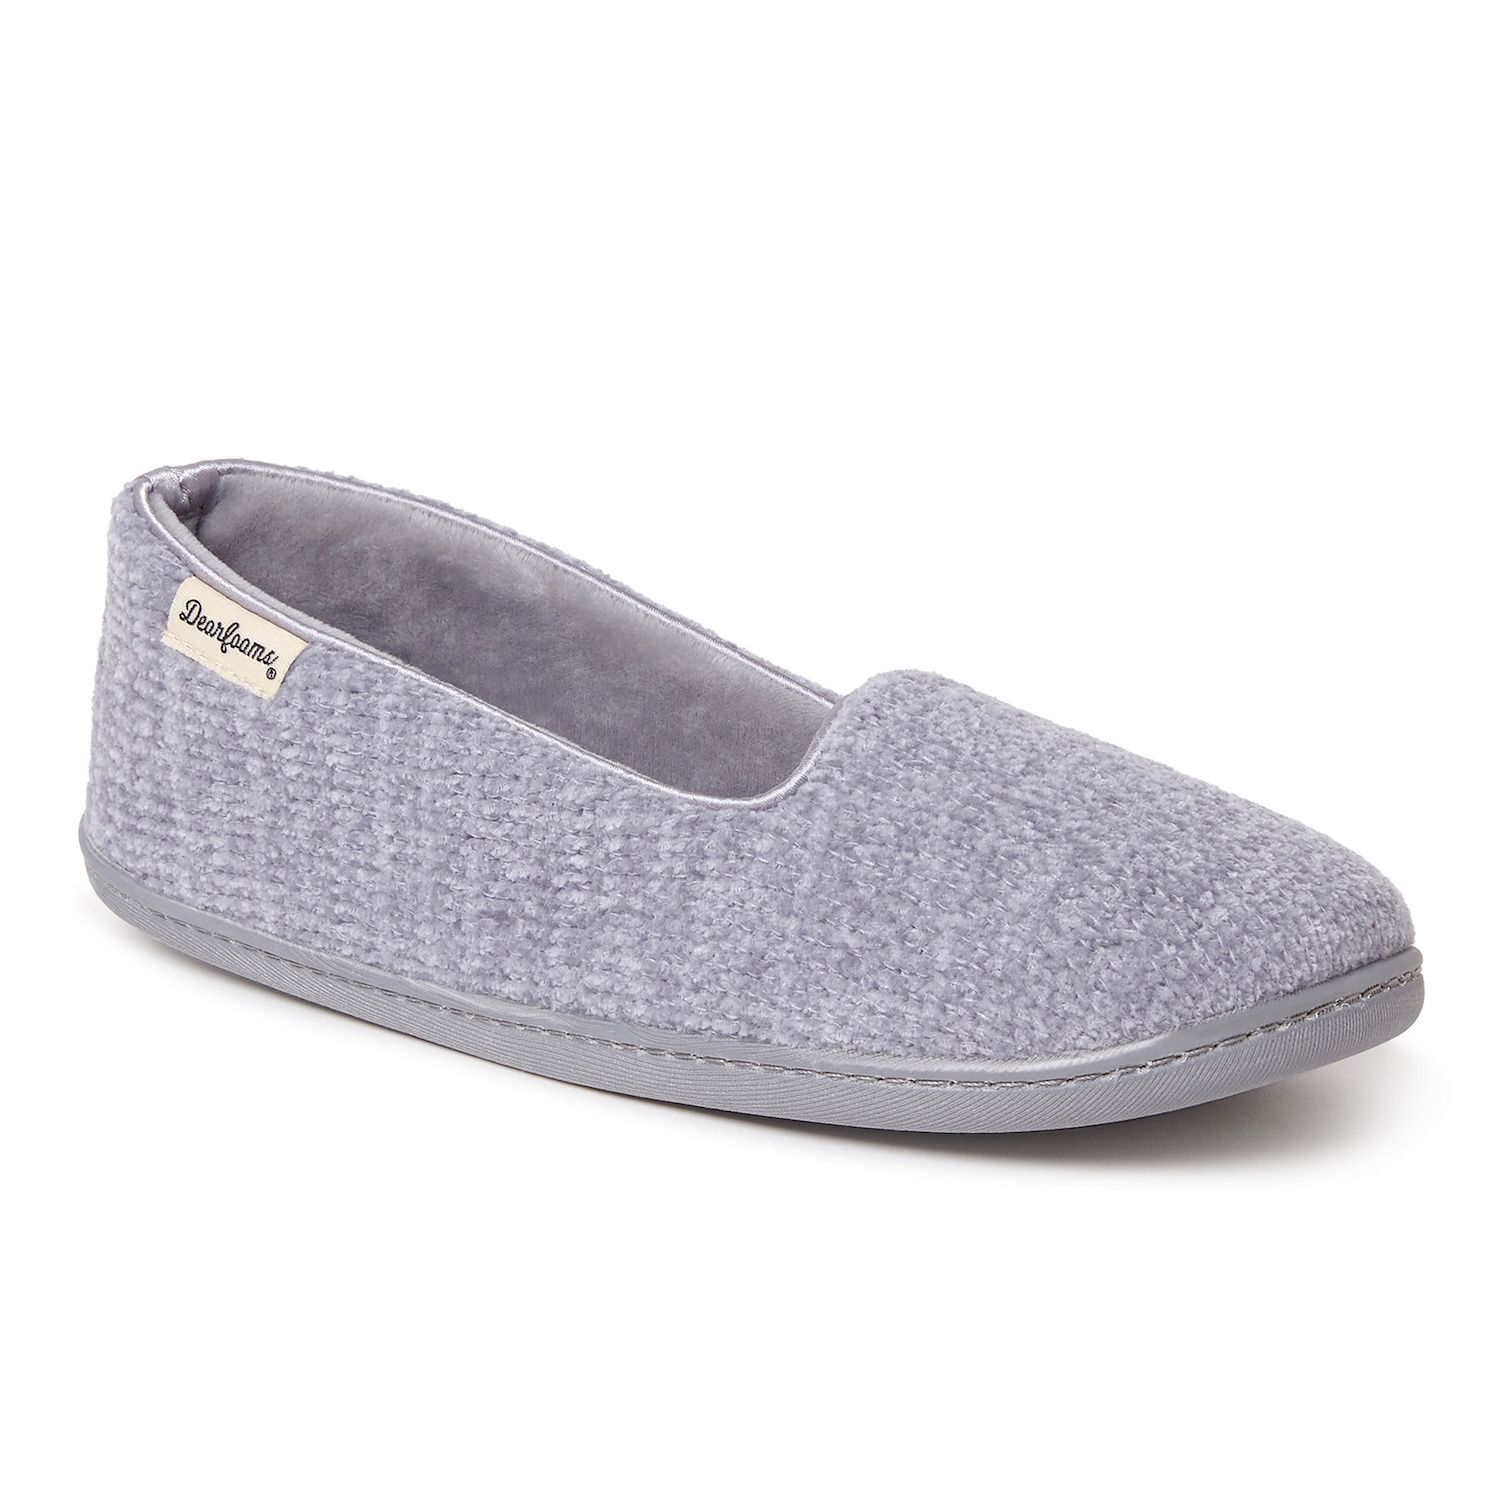 dearfoam chenille slippers